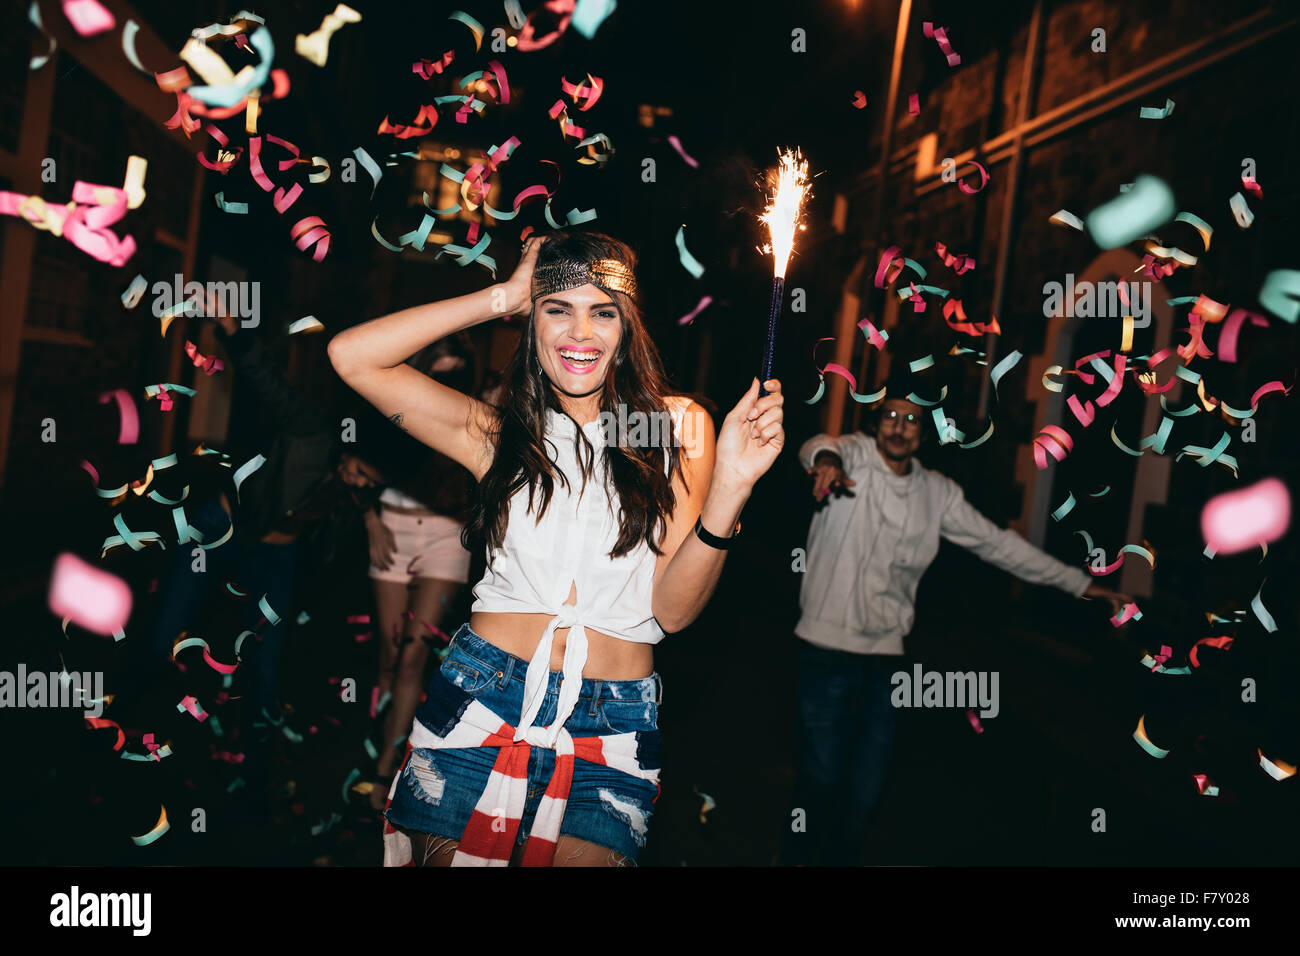 Glückliche junge Frau feiern mit ihren Freunden im Freien in der Nacht. Freunde, Partys im Freien mit Konfetti und Wunderkerzen. Stockfoto